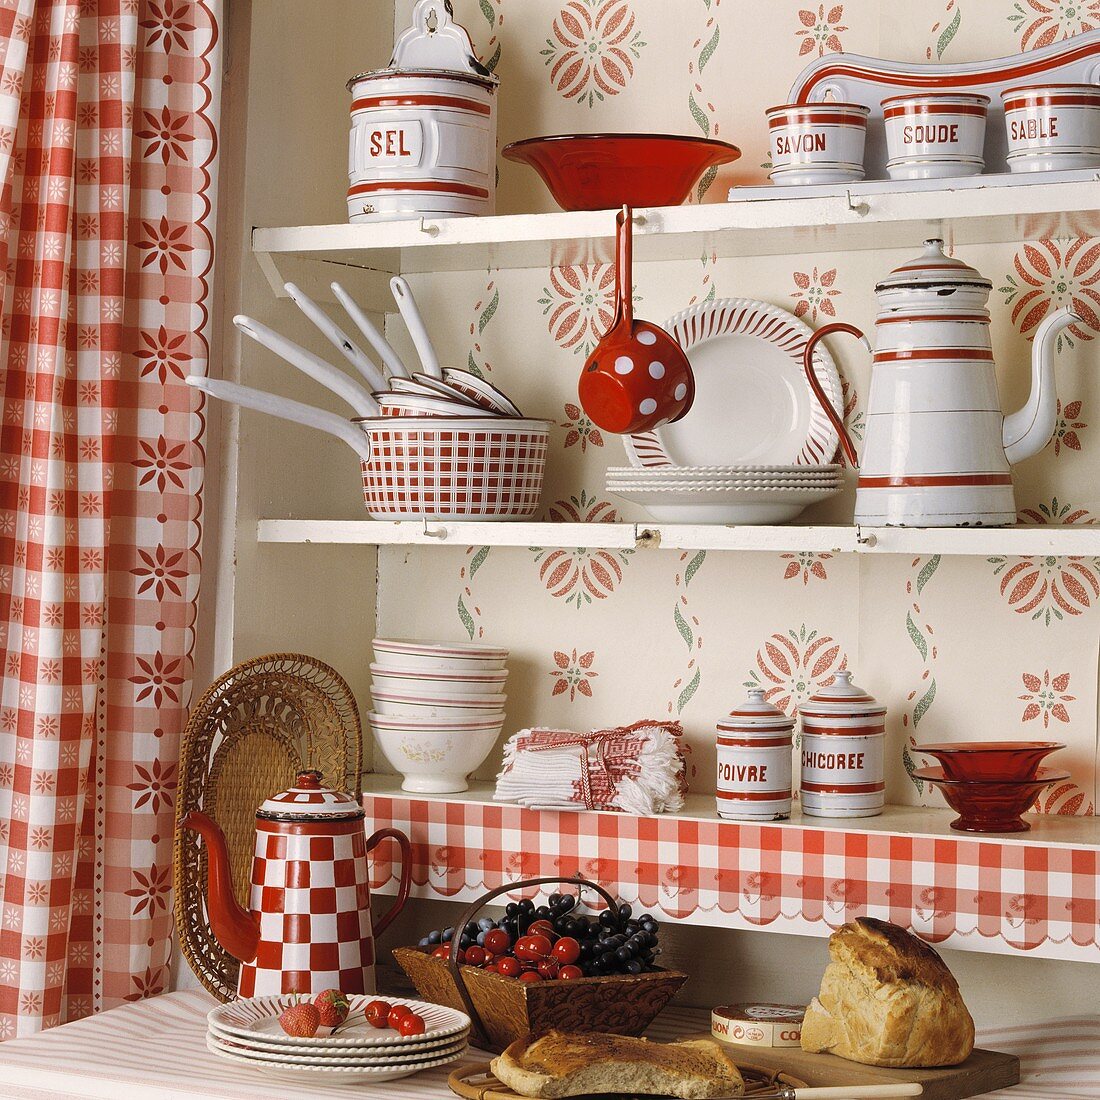 Rot-weisses Geschirr in einem Küchenregal mit rot-weiss karierten Gardinen